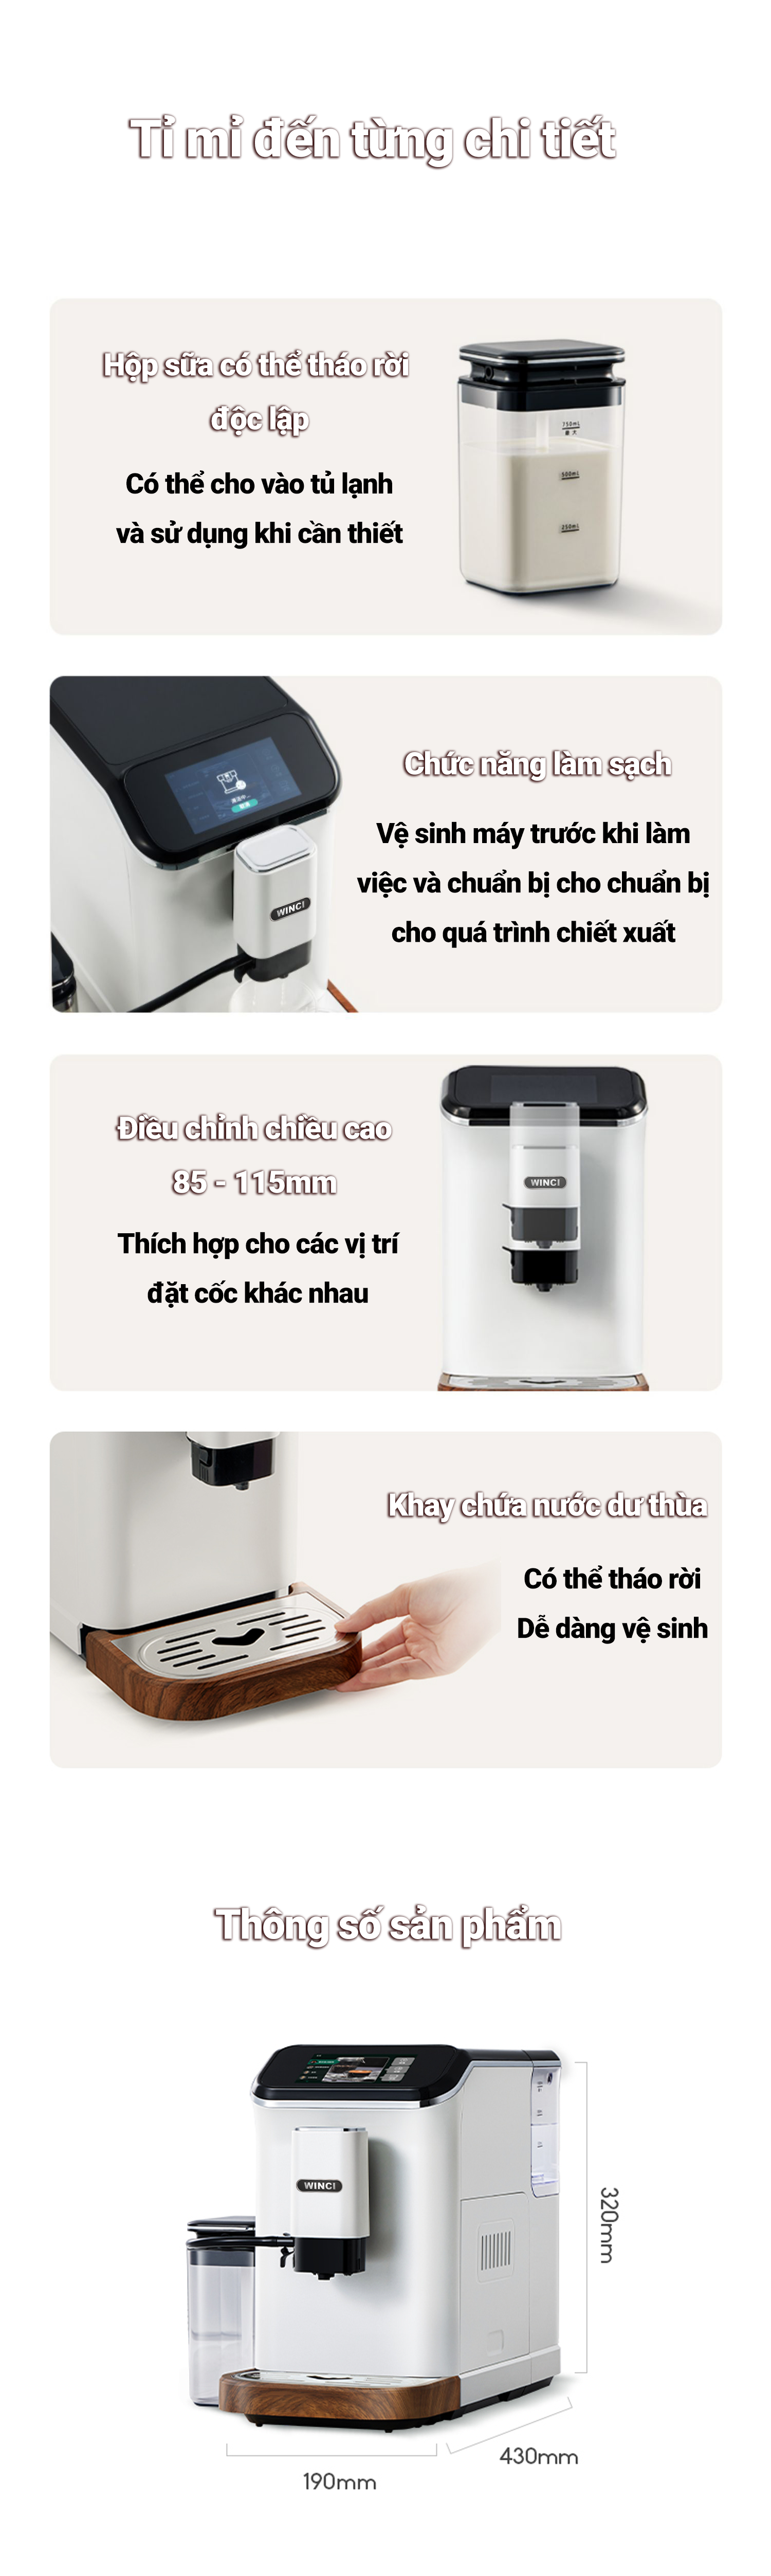 Chức năng và thông số sản phẩm của máy pha cà phê Winci EM64